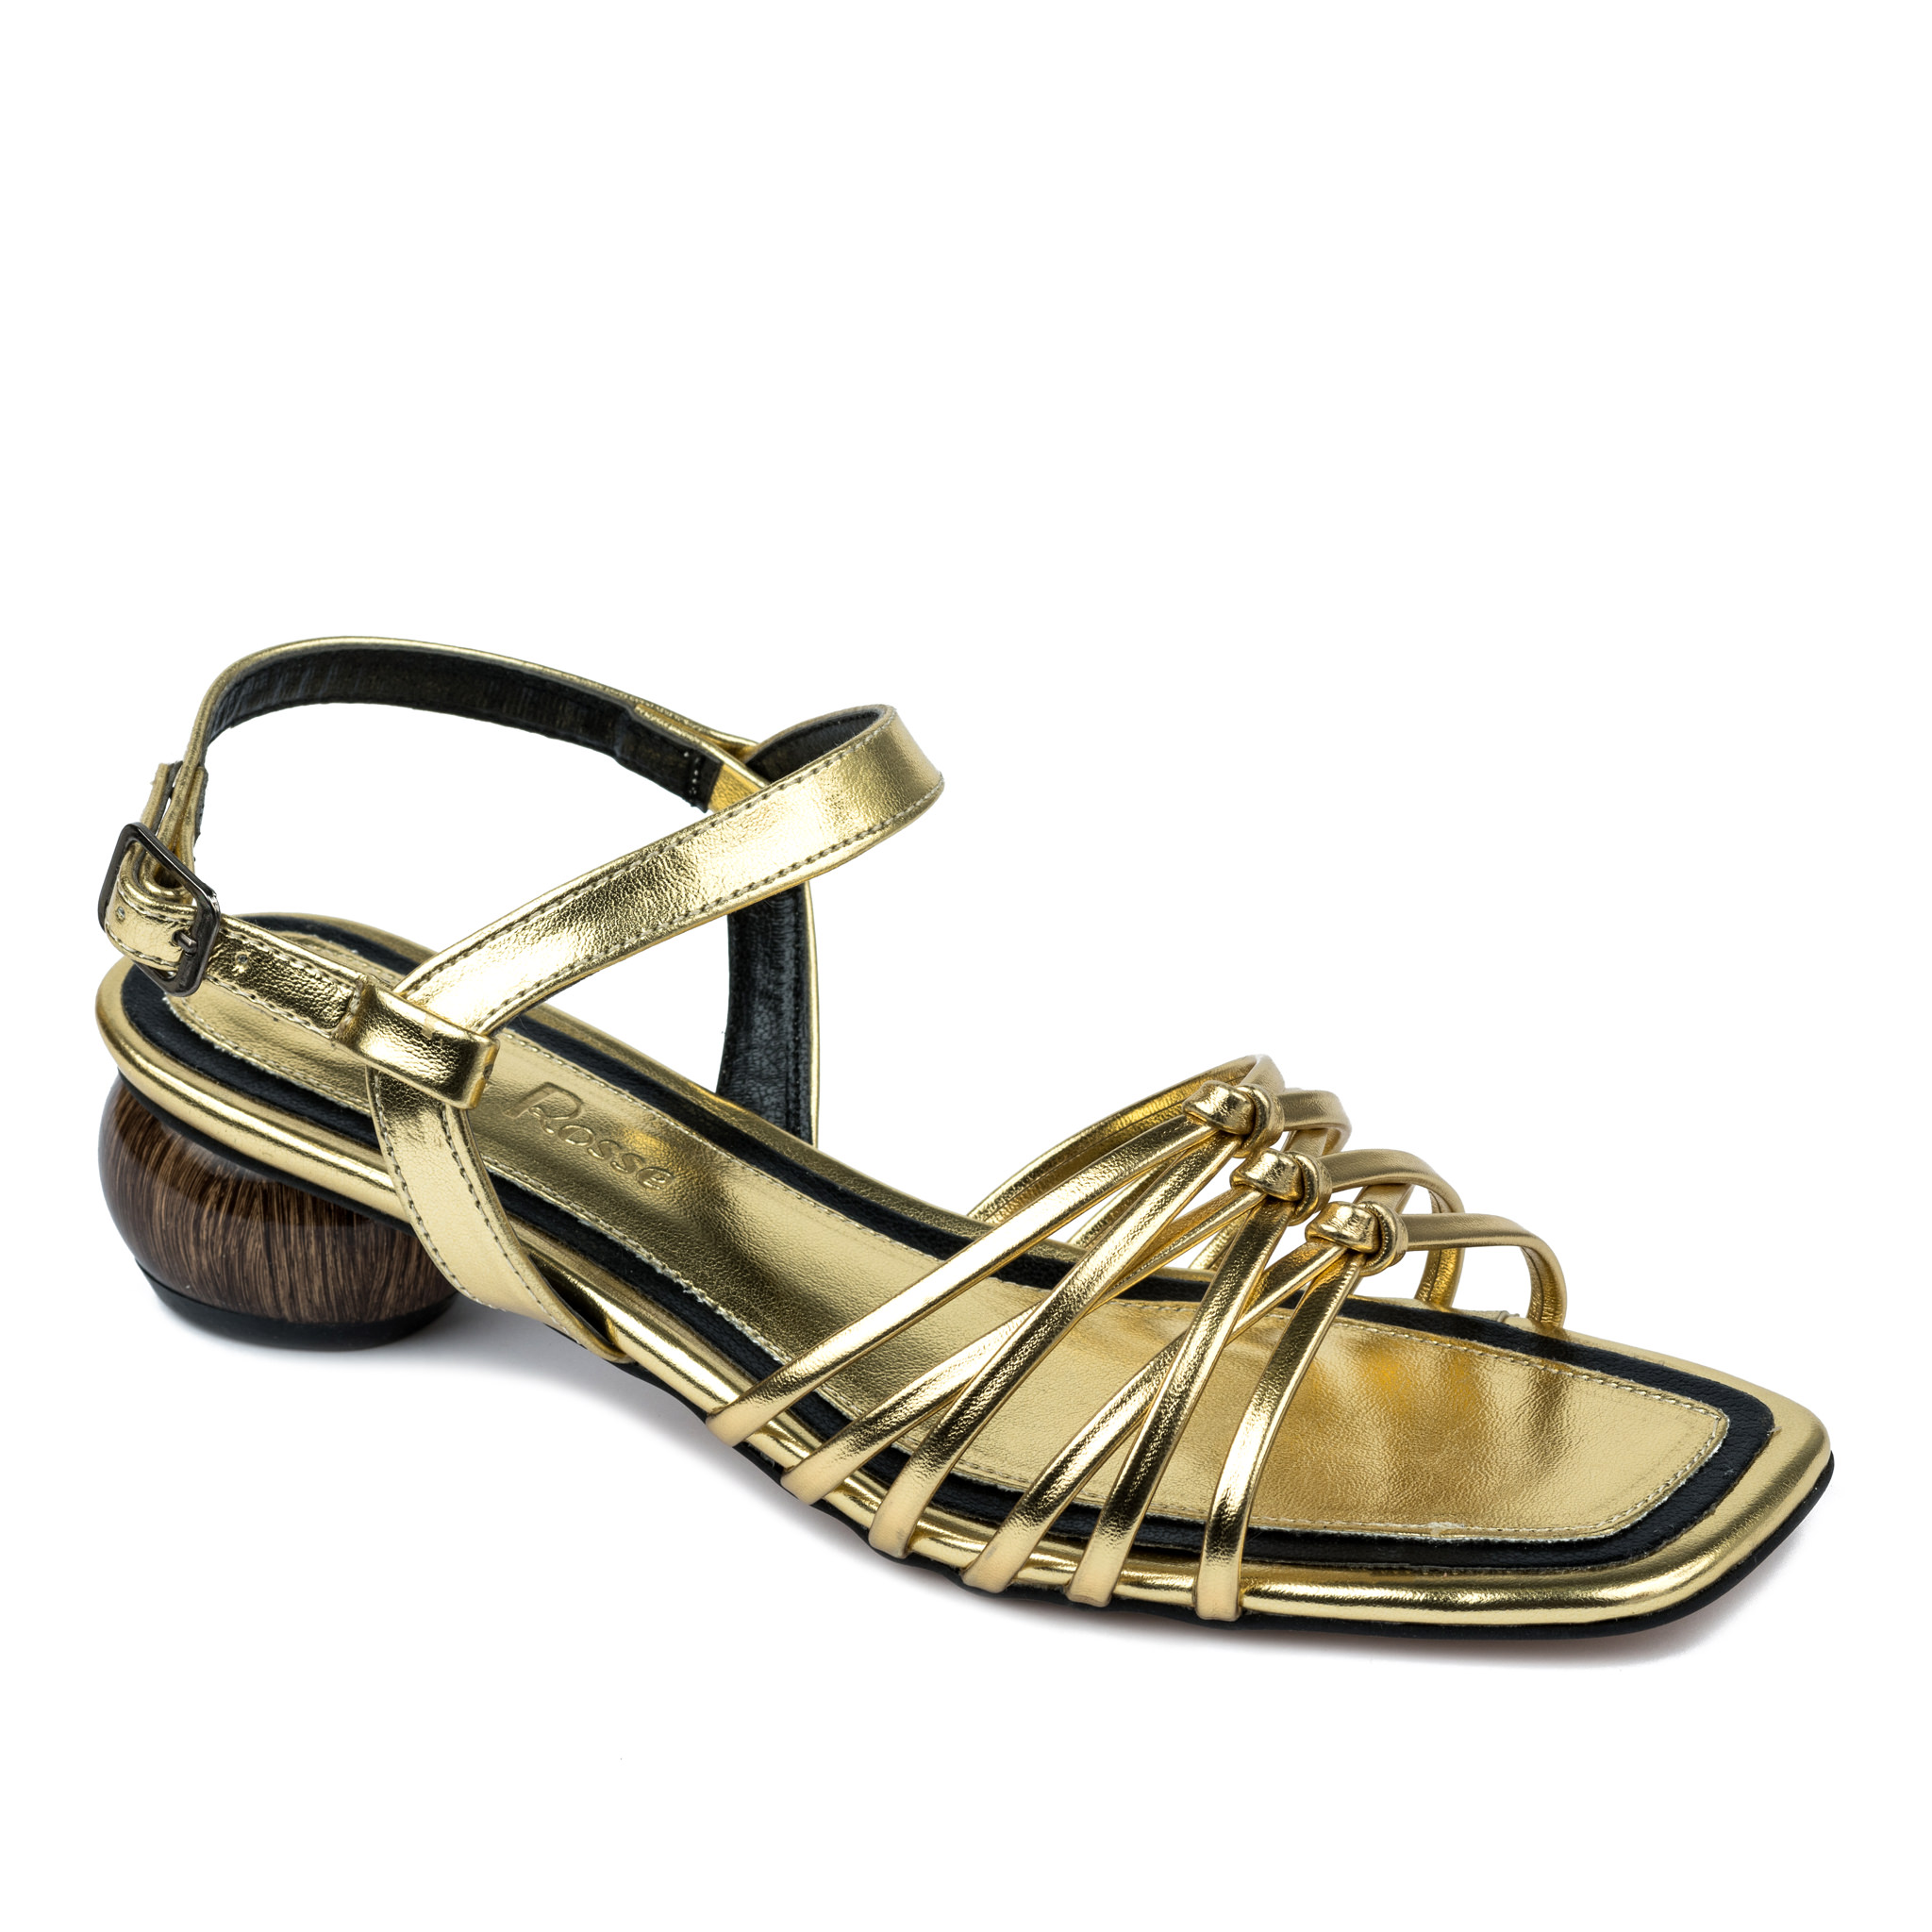 Women sandals A627 - GOLD